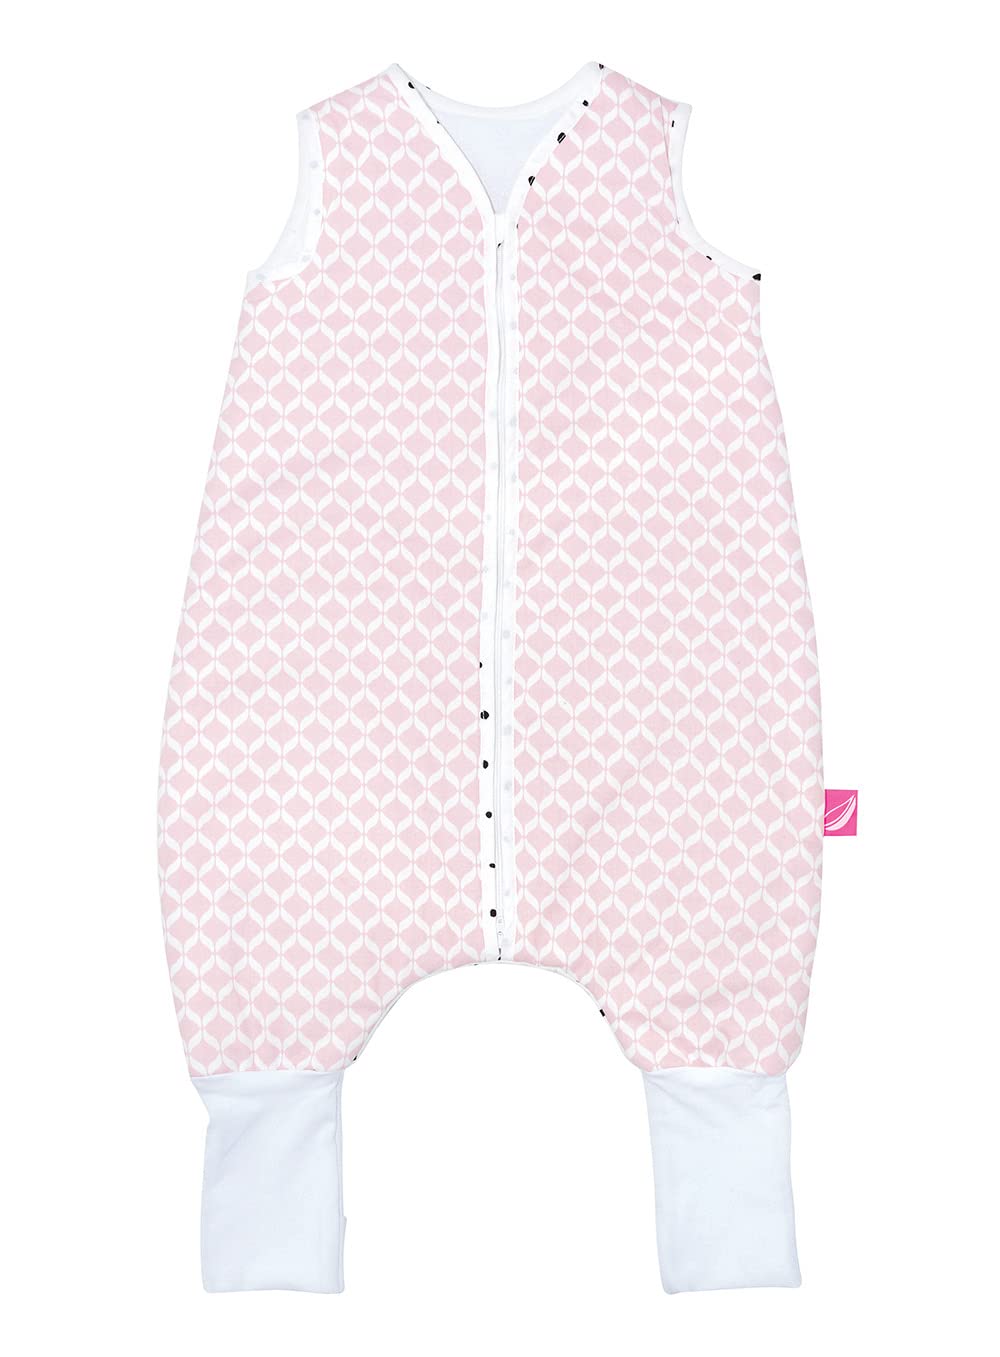 Babyschlafsack aus Baumwolle mit Beinen gefüttert von Motherhood - kuscheliger Babyschlafsack Öko Tex Standard TOG 2, Größe: 1-1,5 Jahre, rosa classics